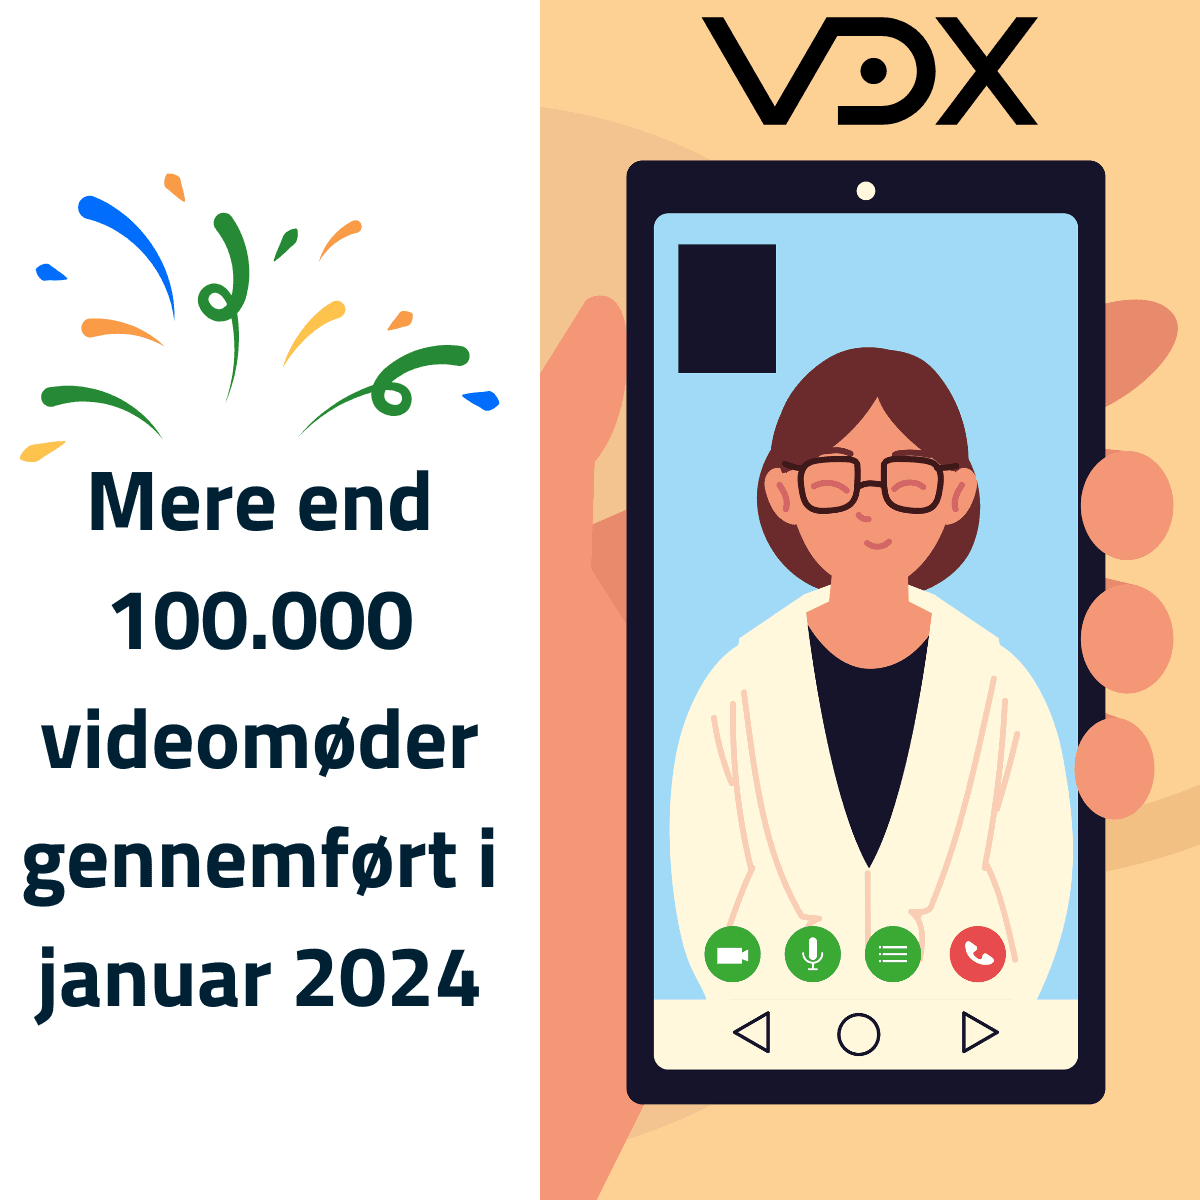 Animeret illustration af videomøde med VDX-logo i toppen og tekst "Mere end 100.000 videomøder gennemført i januar 2024"